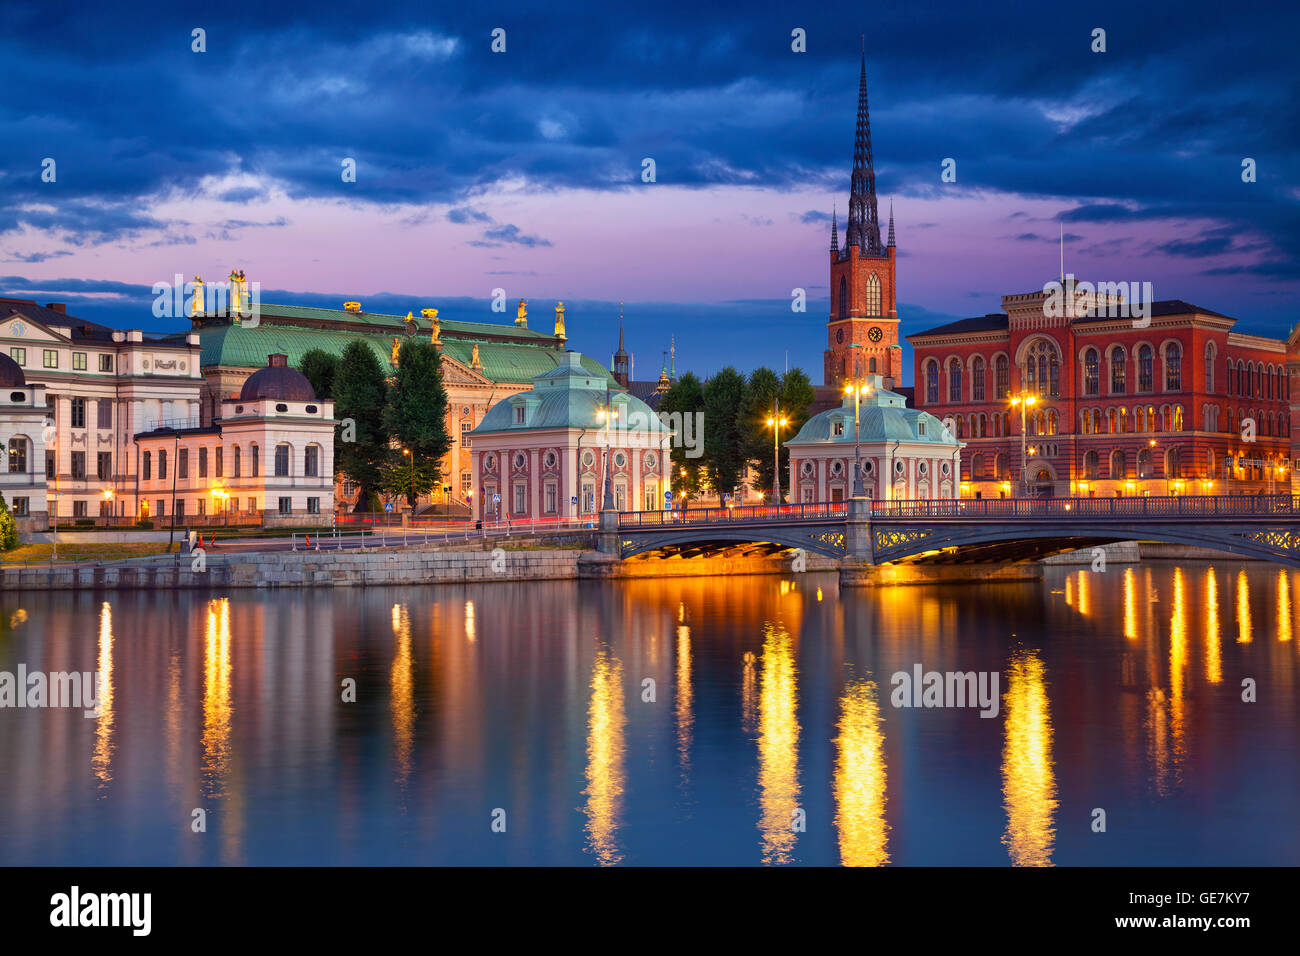 Stockholm. Image of Stockholm, Sweden during twilight blue hour. Stock Photo